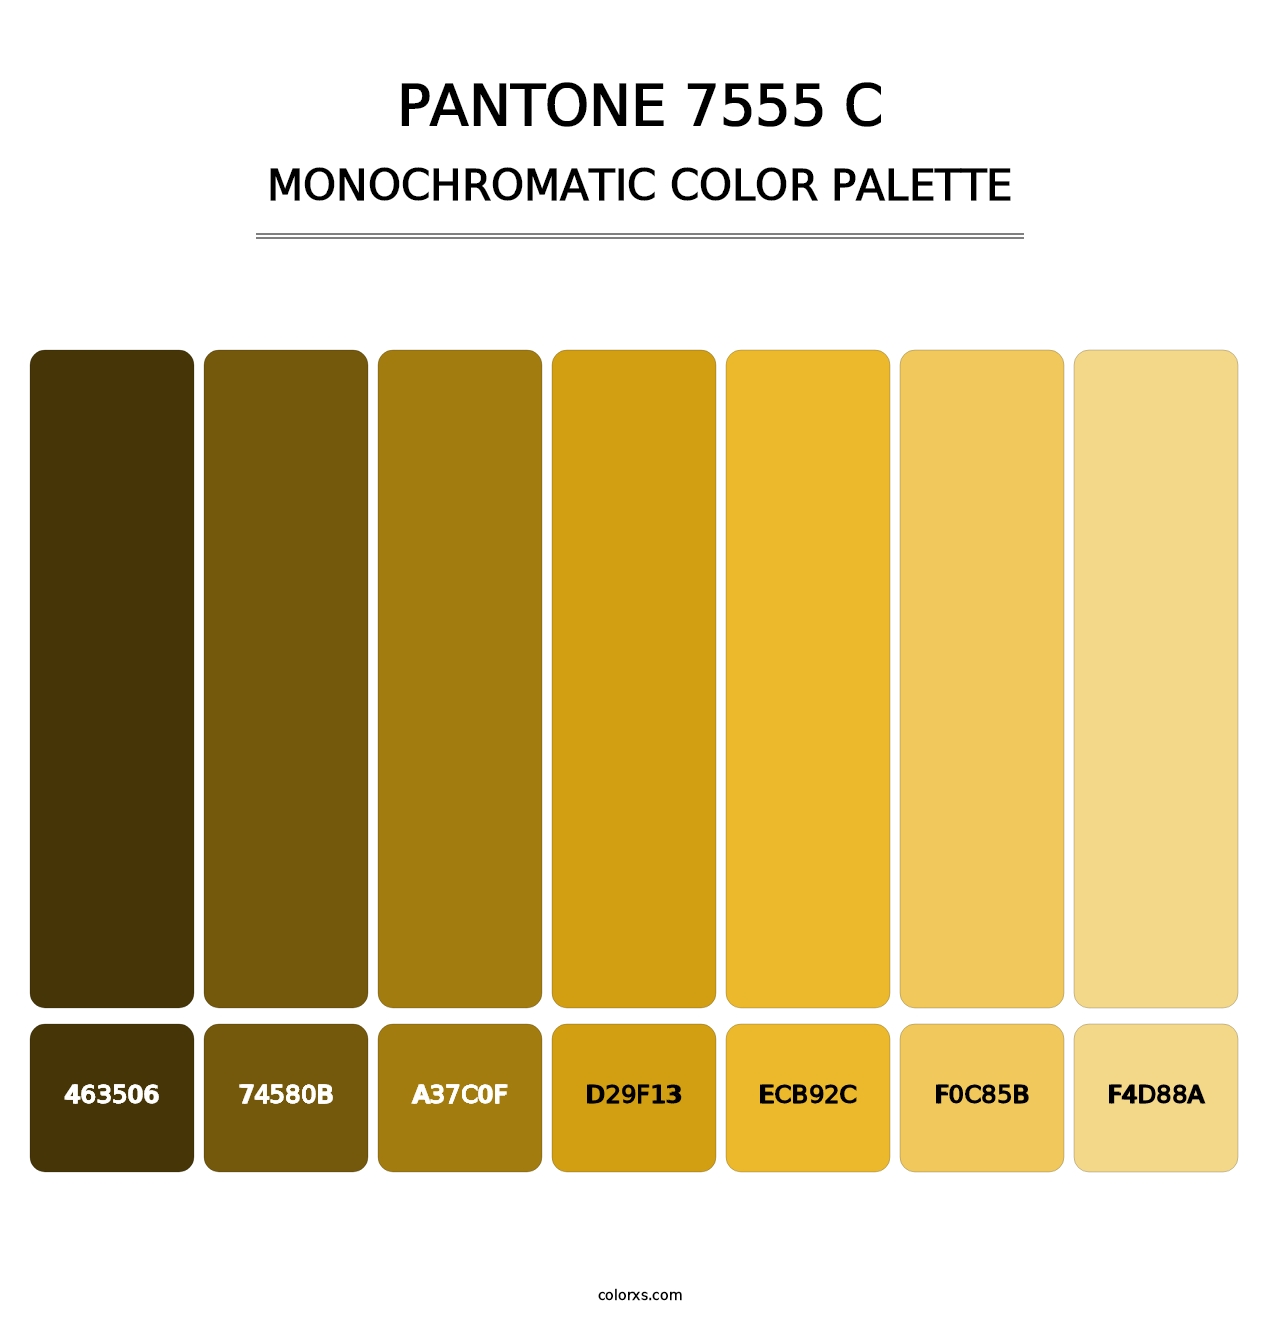 PANTONE 7555 C - Monochromatic Color Palette